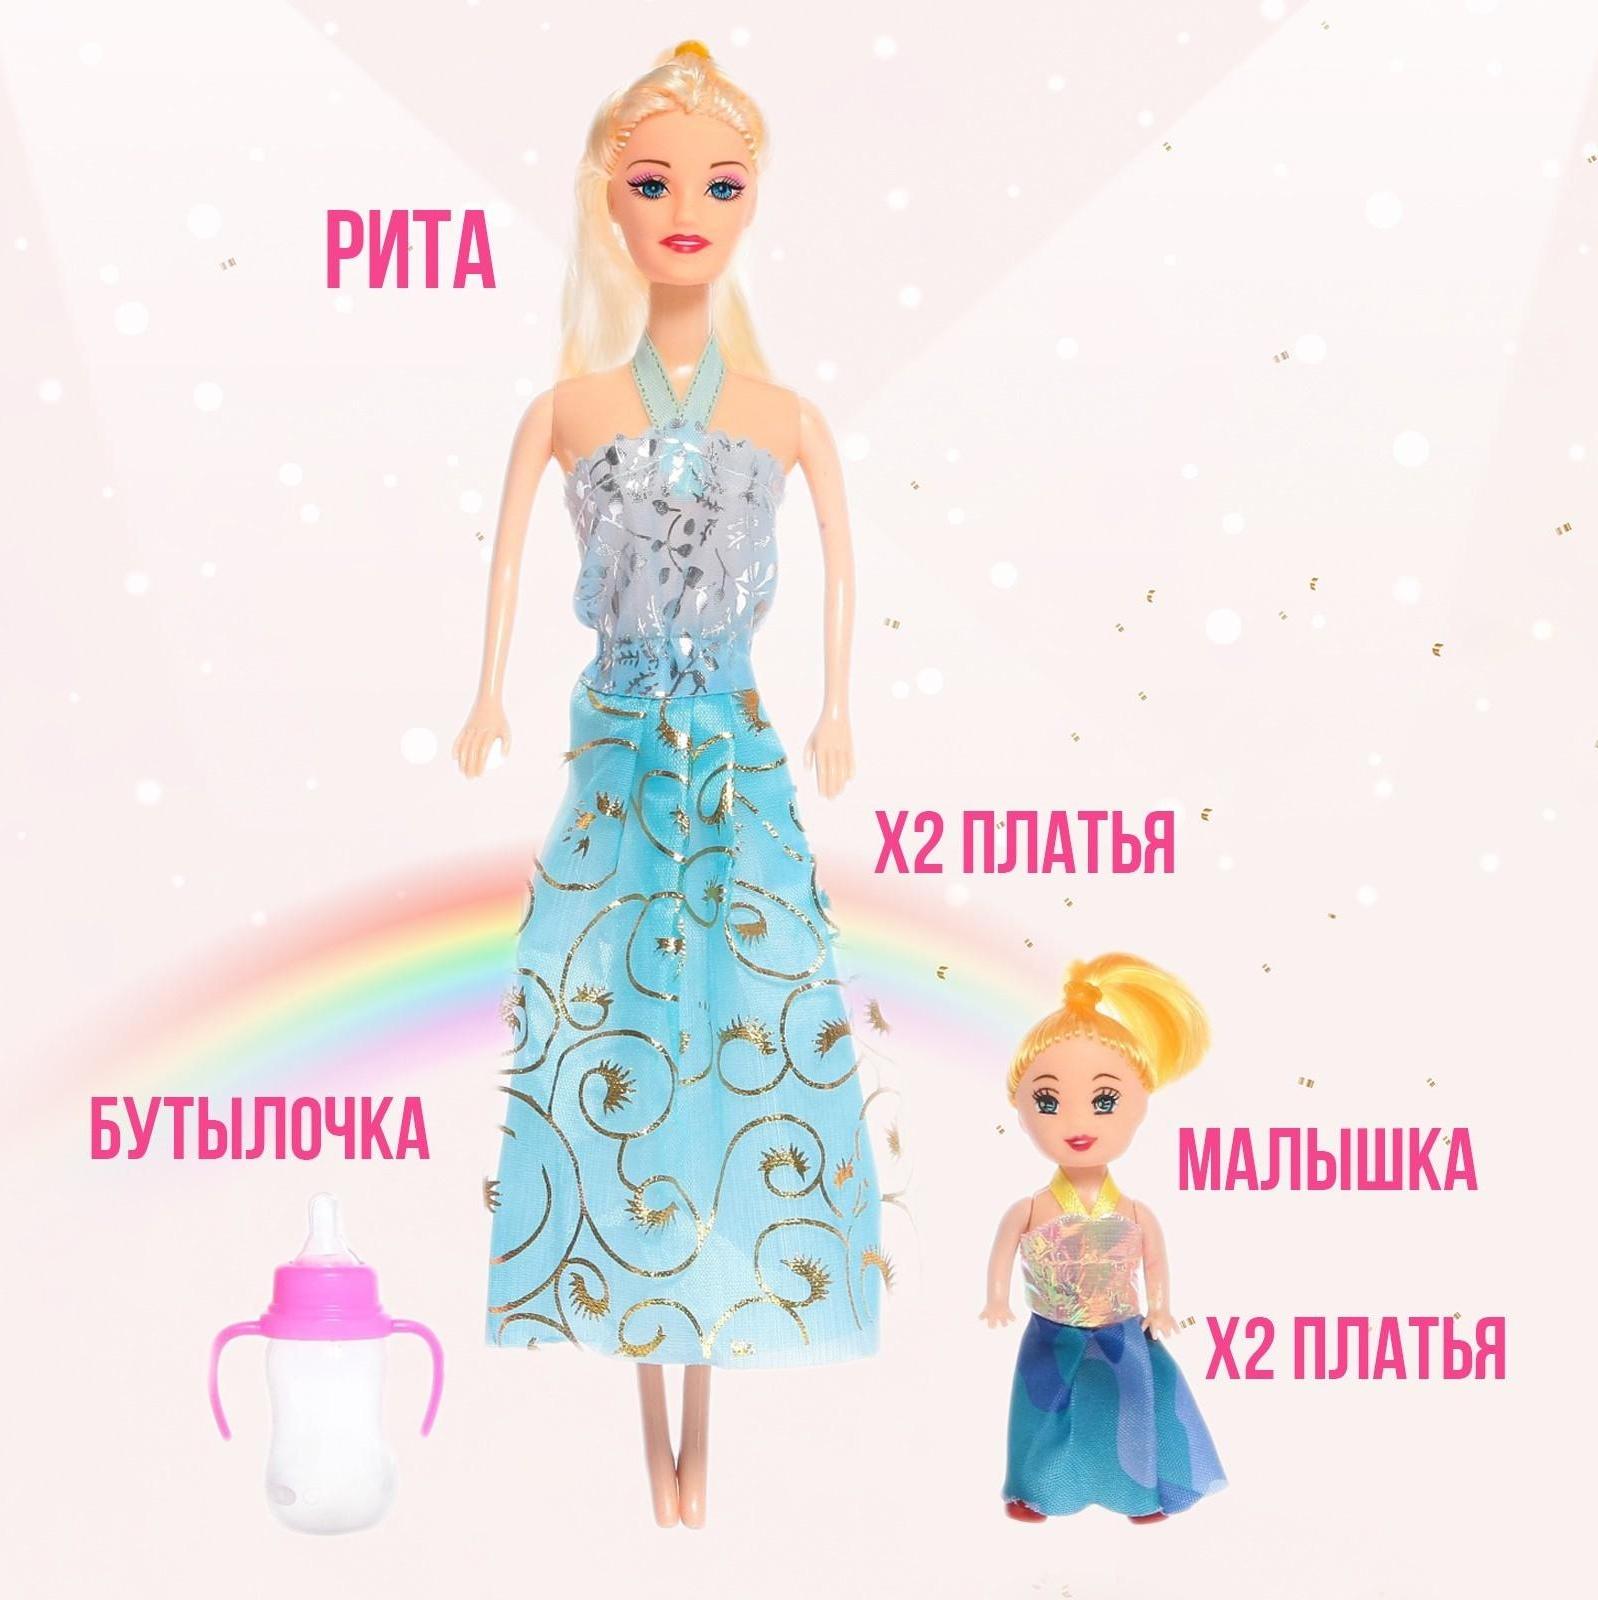 Кукла-модель «Рита» с малышкой, с набором платьев, МИКС